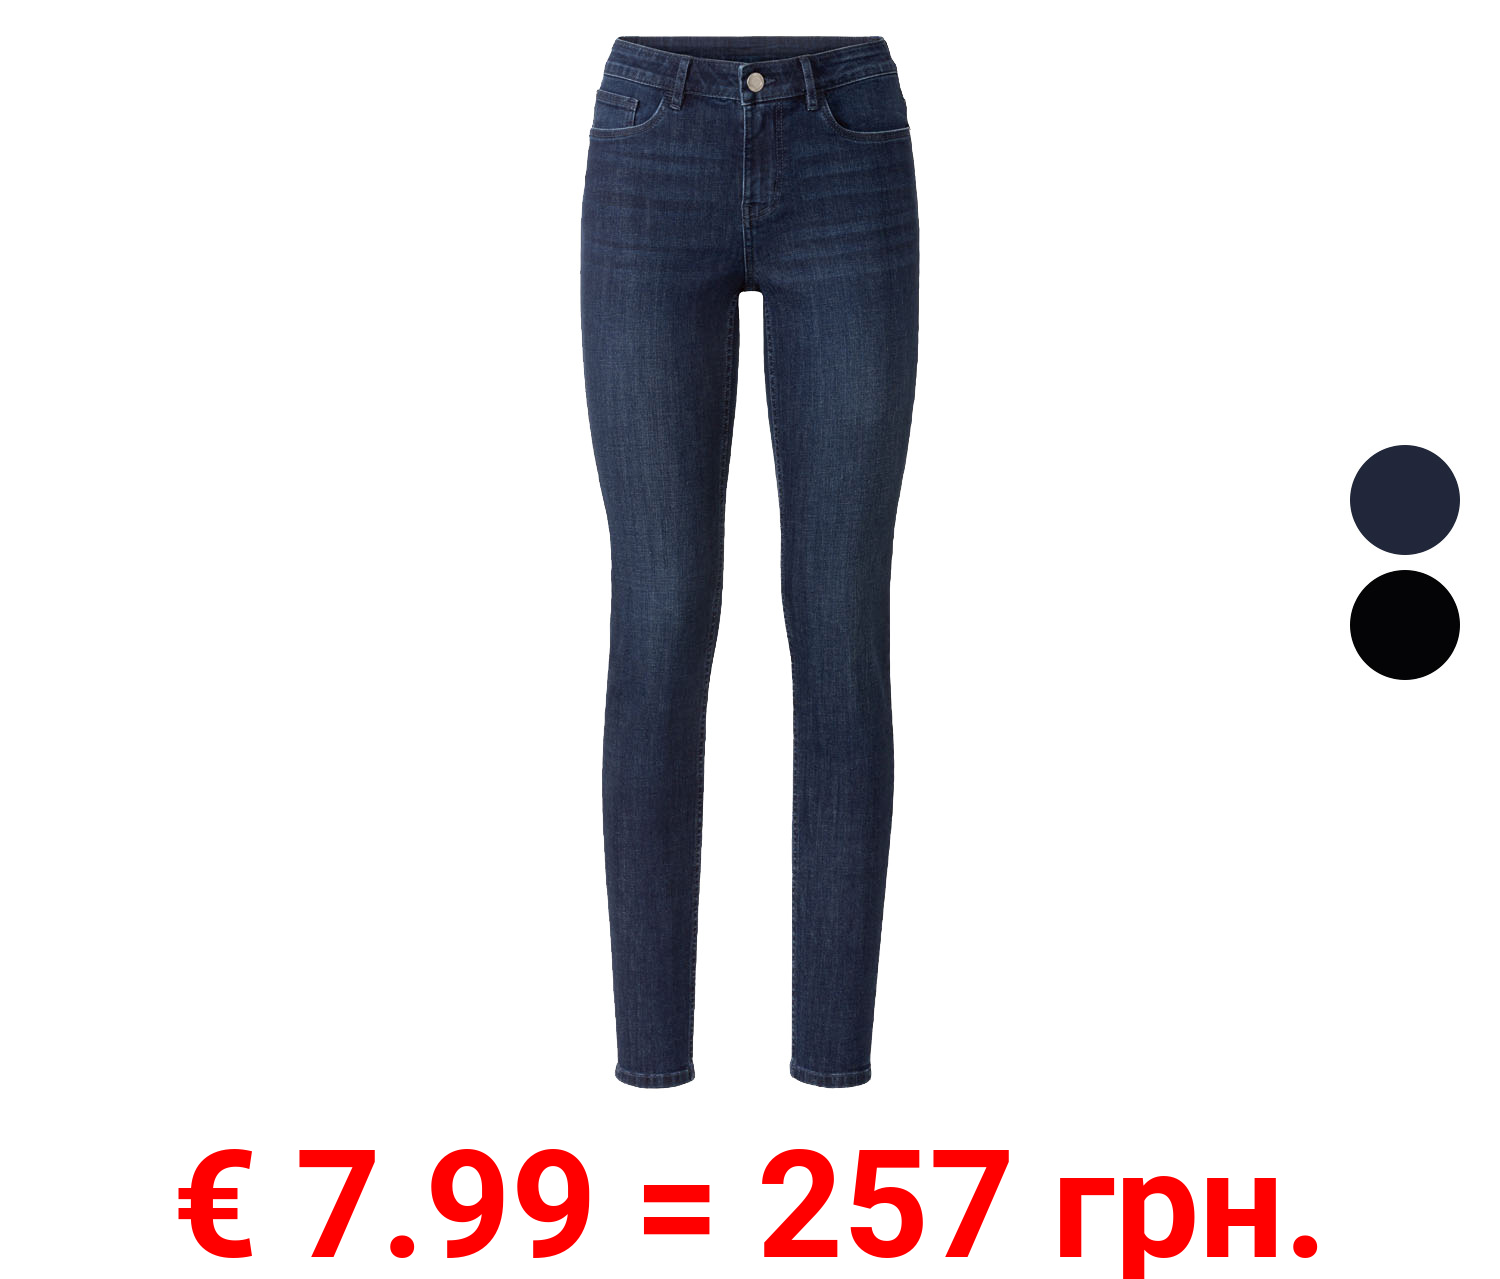 ESMARA® Damen Jeans, Super Skinny fit